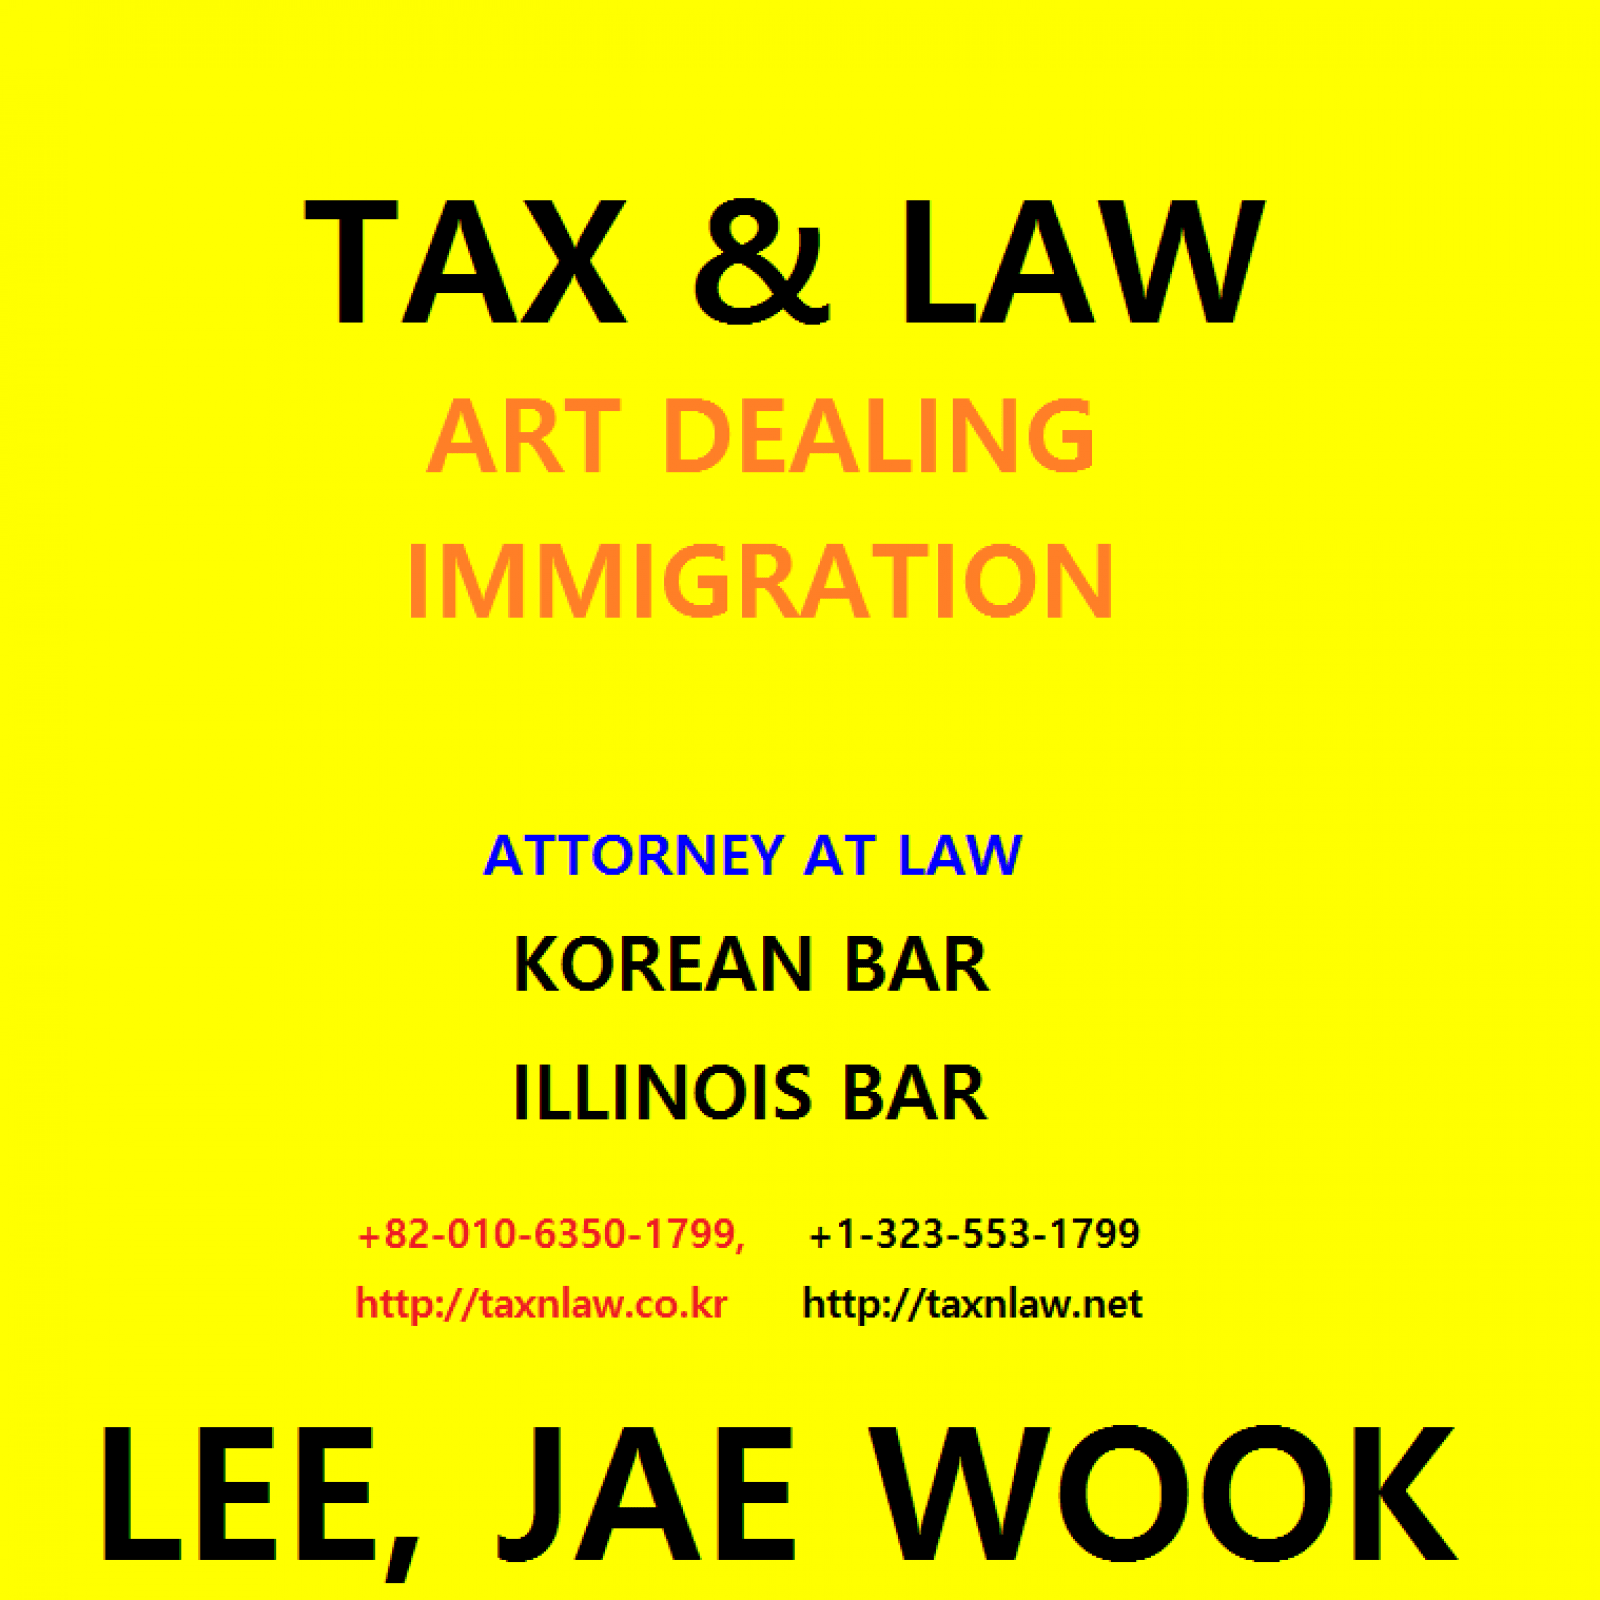 Tax & Law, Jae Wook Lee Legal Services | Seocho-gu, Seoul